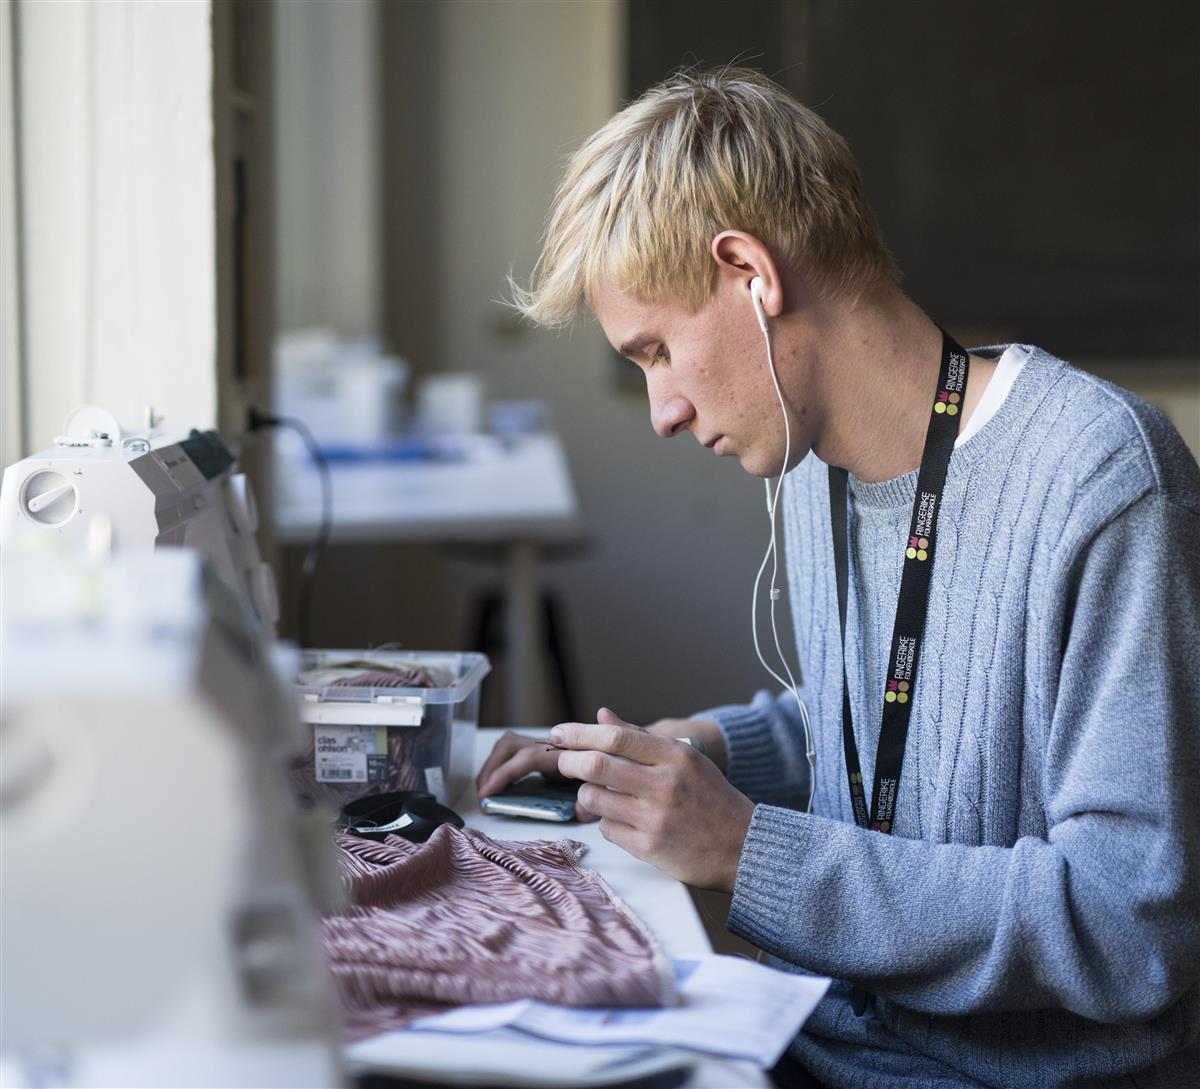 En elev sitter foran en symaskin og jobber med et syprosjekt mens han hører på musikk på øret.  - Klikk for stort bilde